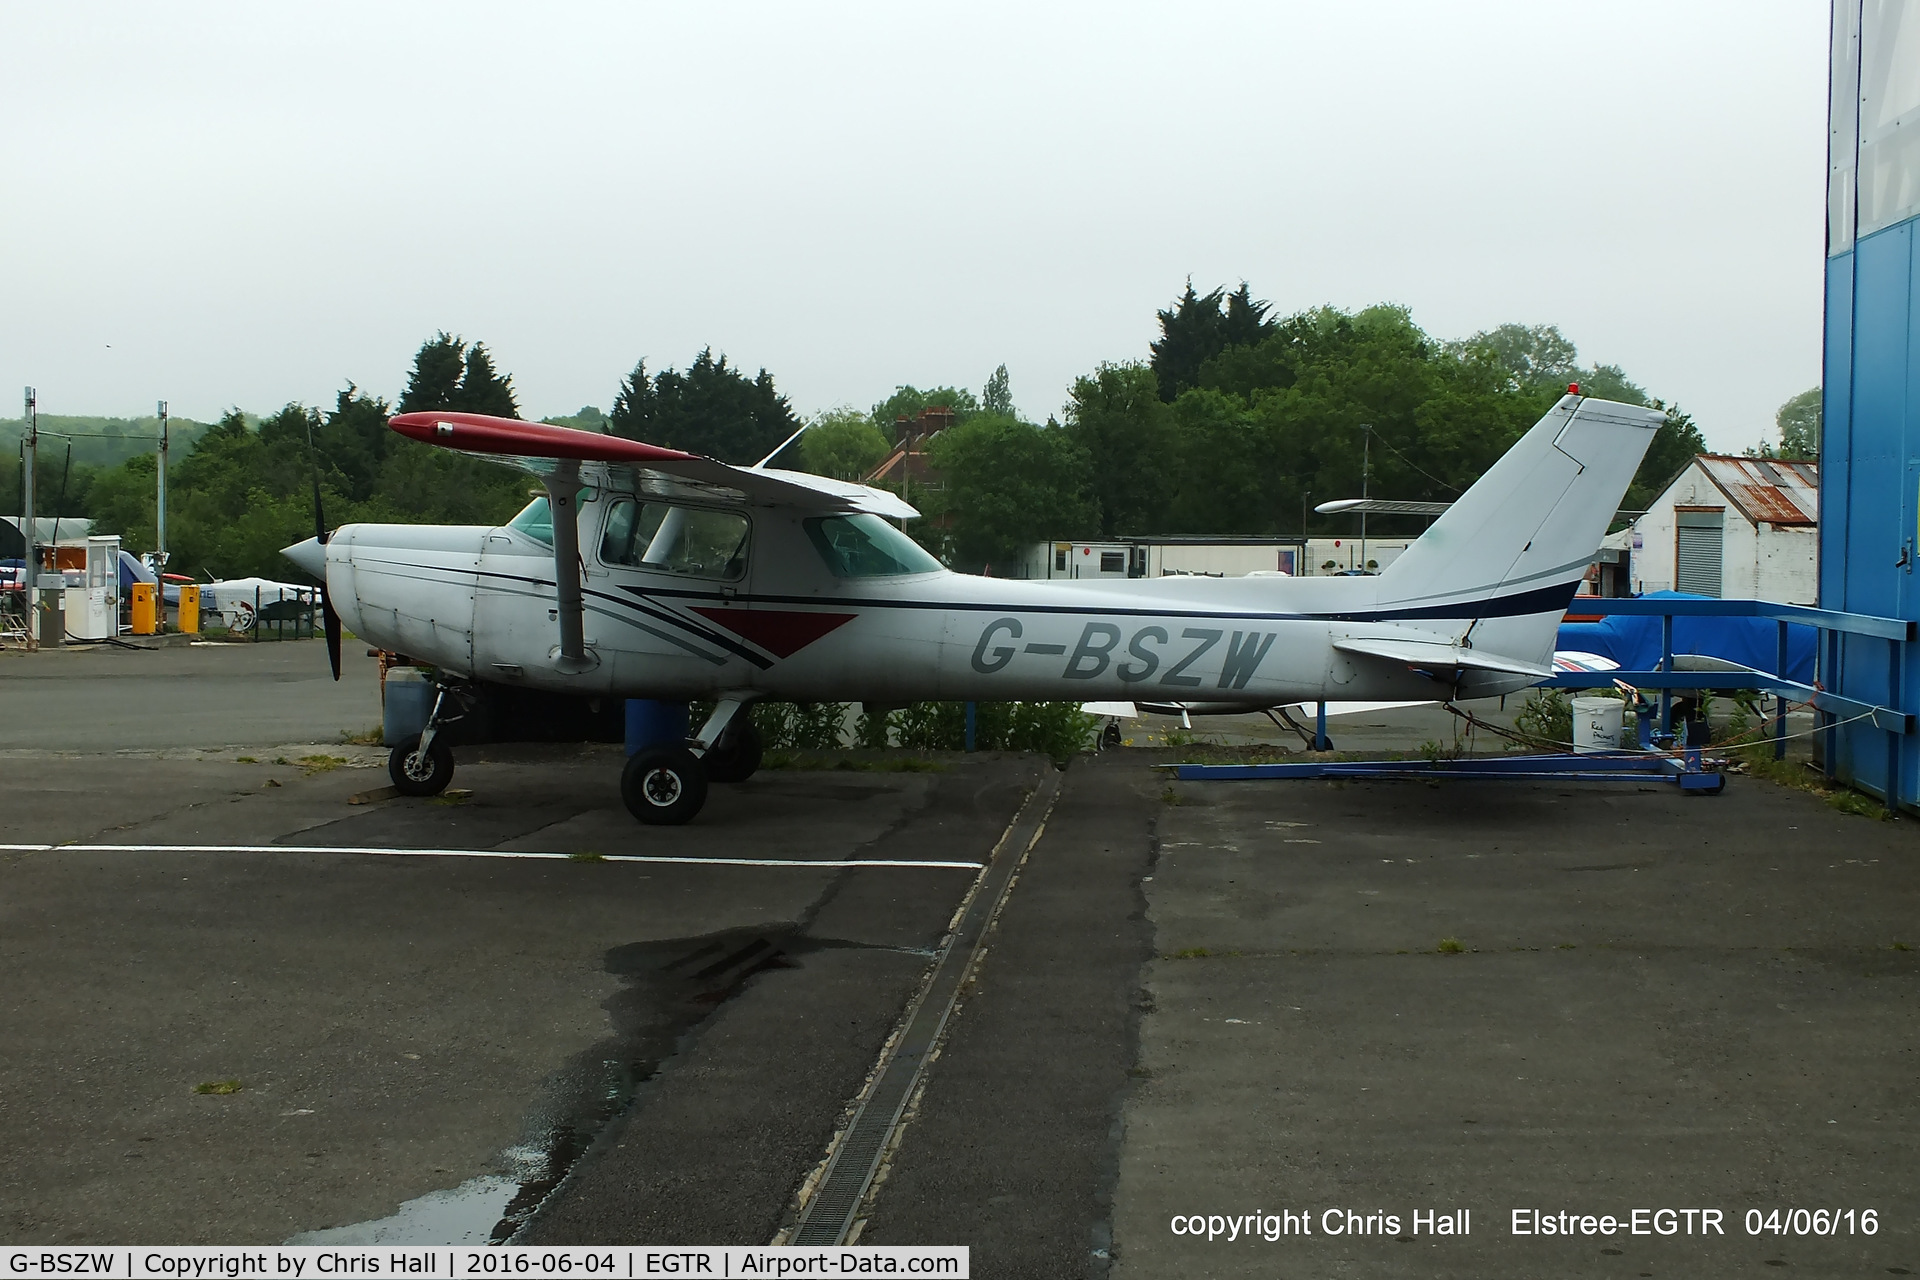 G-BSZW, 1977 Cessna 152 C/N 152-81072, at Elstree